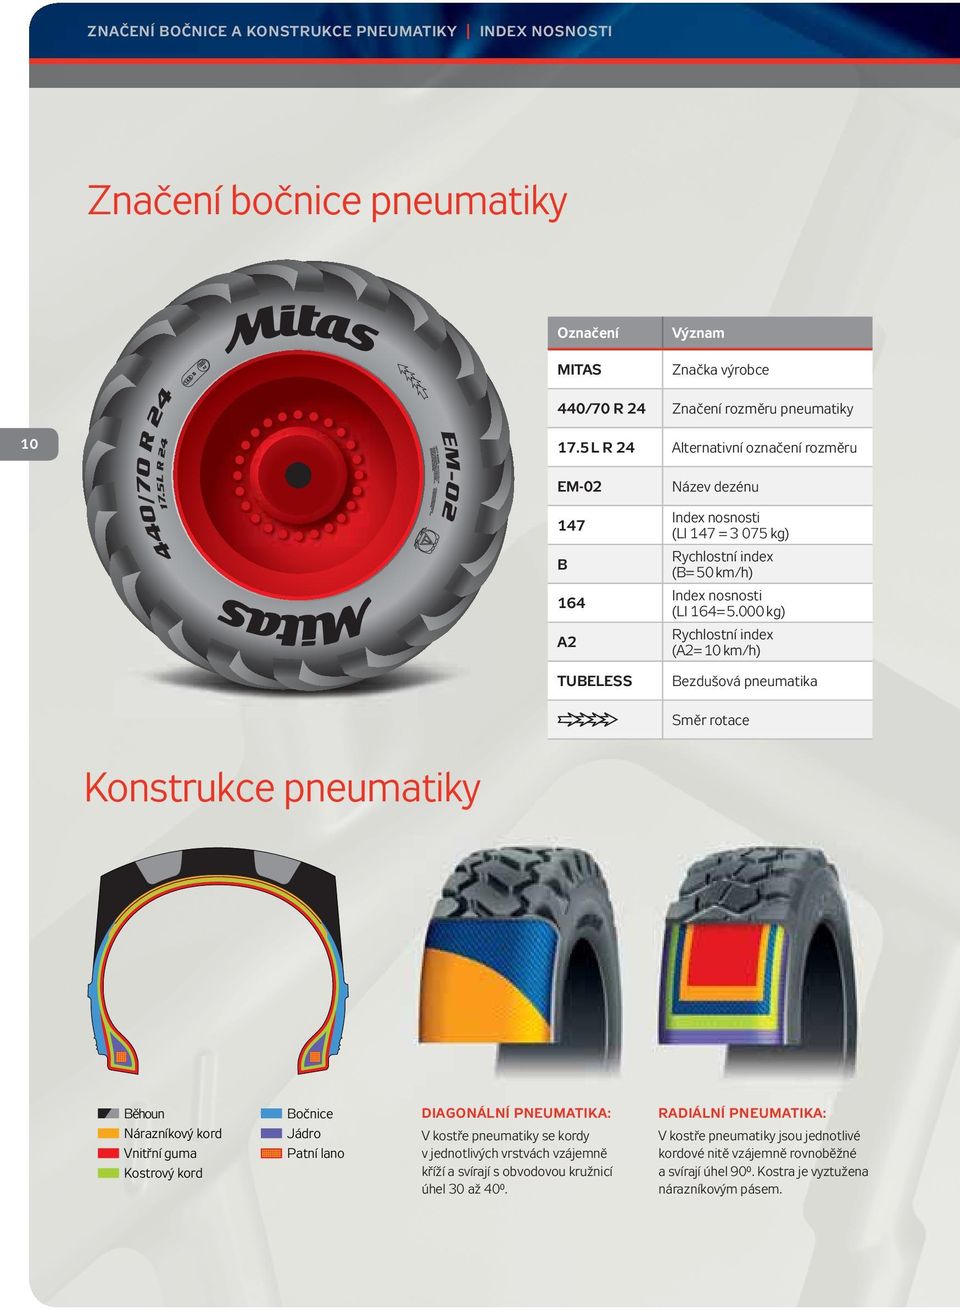 000 kg) Rychlostní index (A2= 10 km/h) TUBELESS Bezdušová pneumatika Směr rotace Konstrukce pneumatiky Běhoun Nárazníkový kord Vnitřní guma Kostrový kord Bočnice Jádro Patní lano DIAGONÁLNÍ